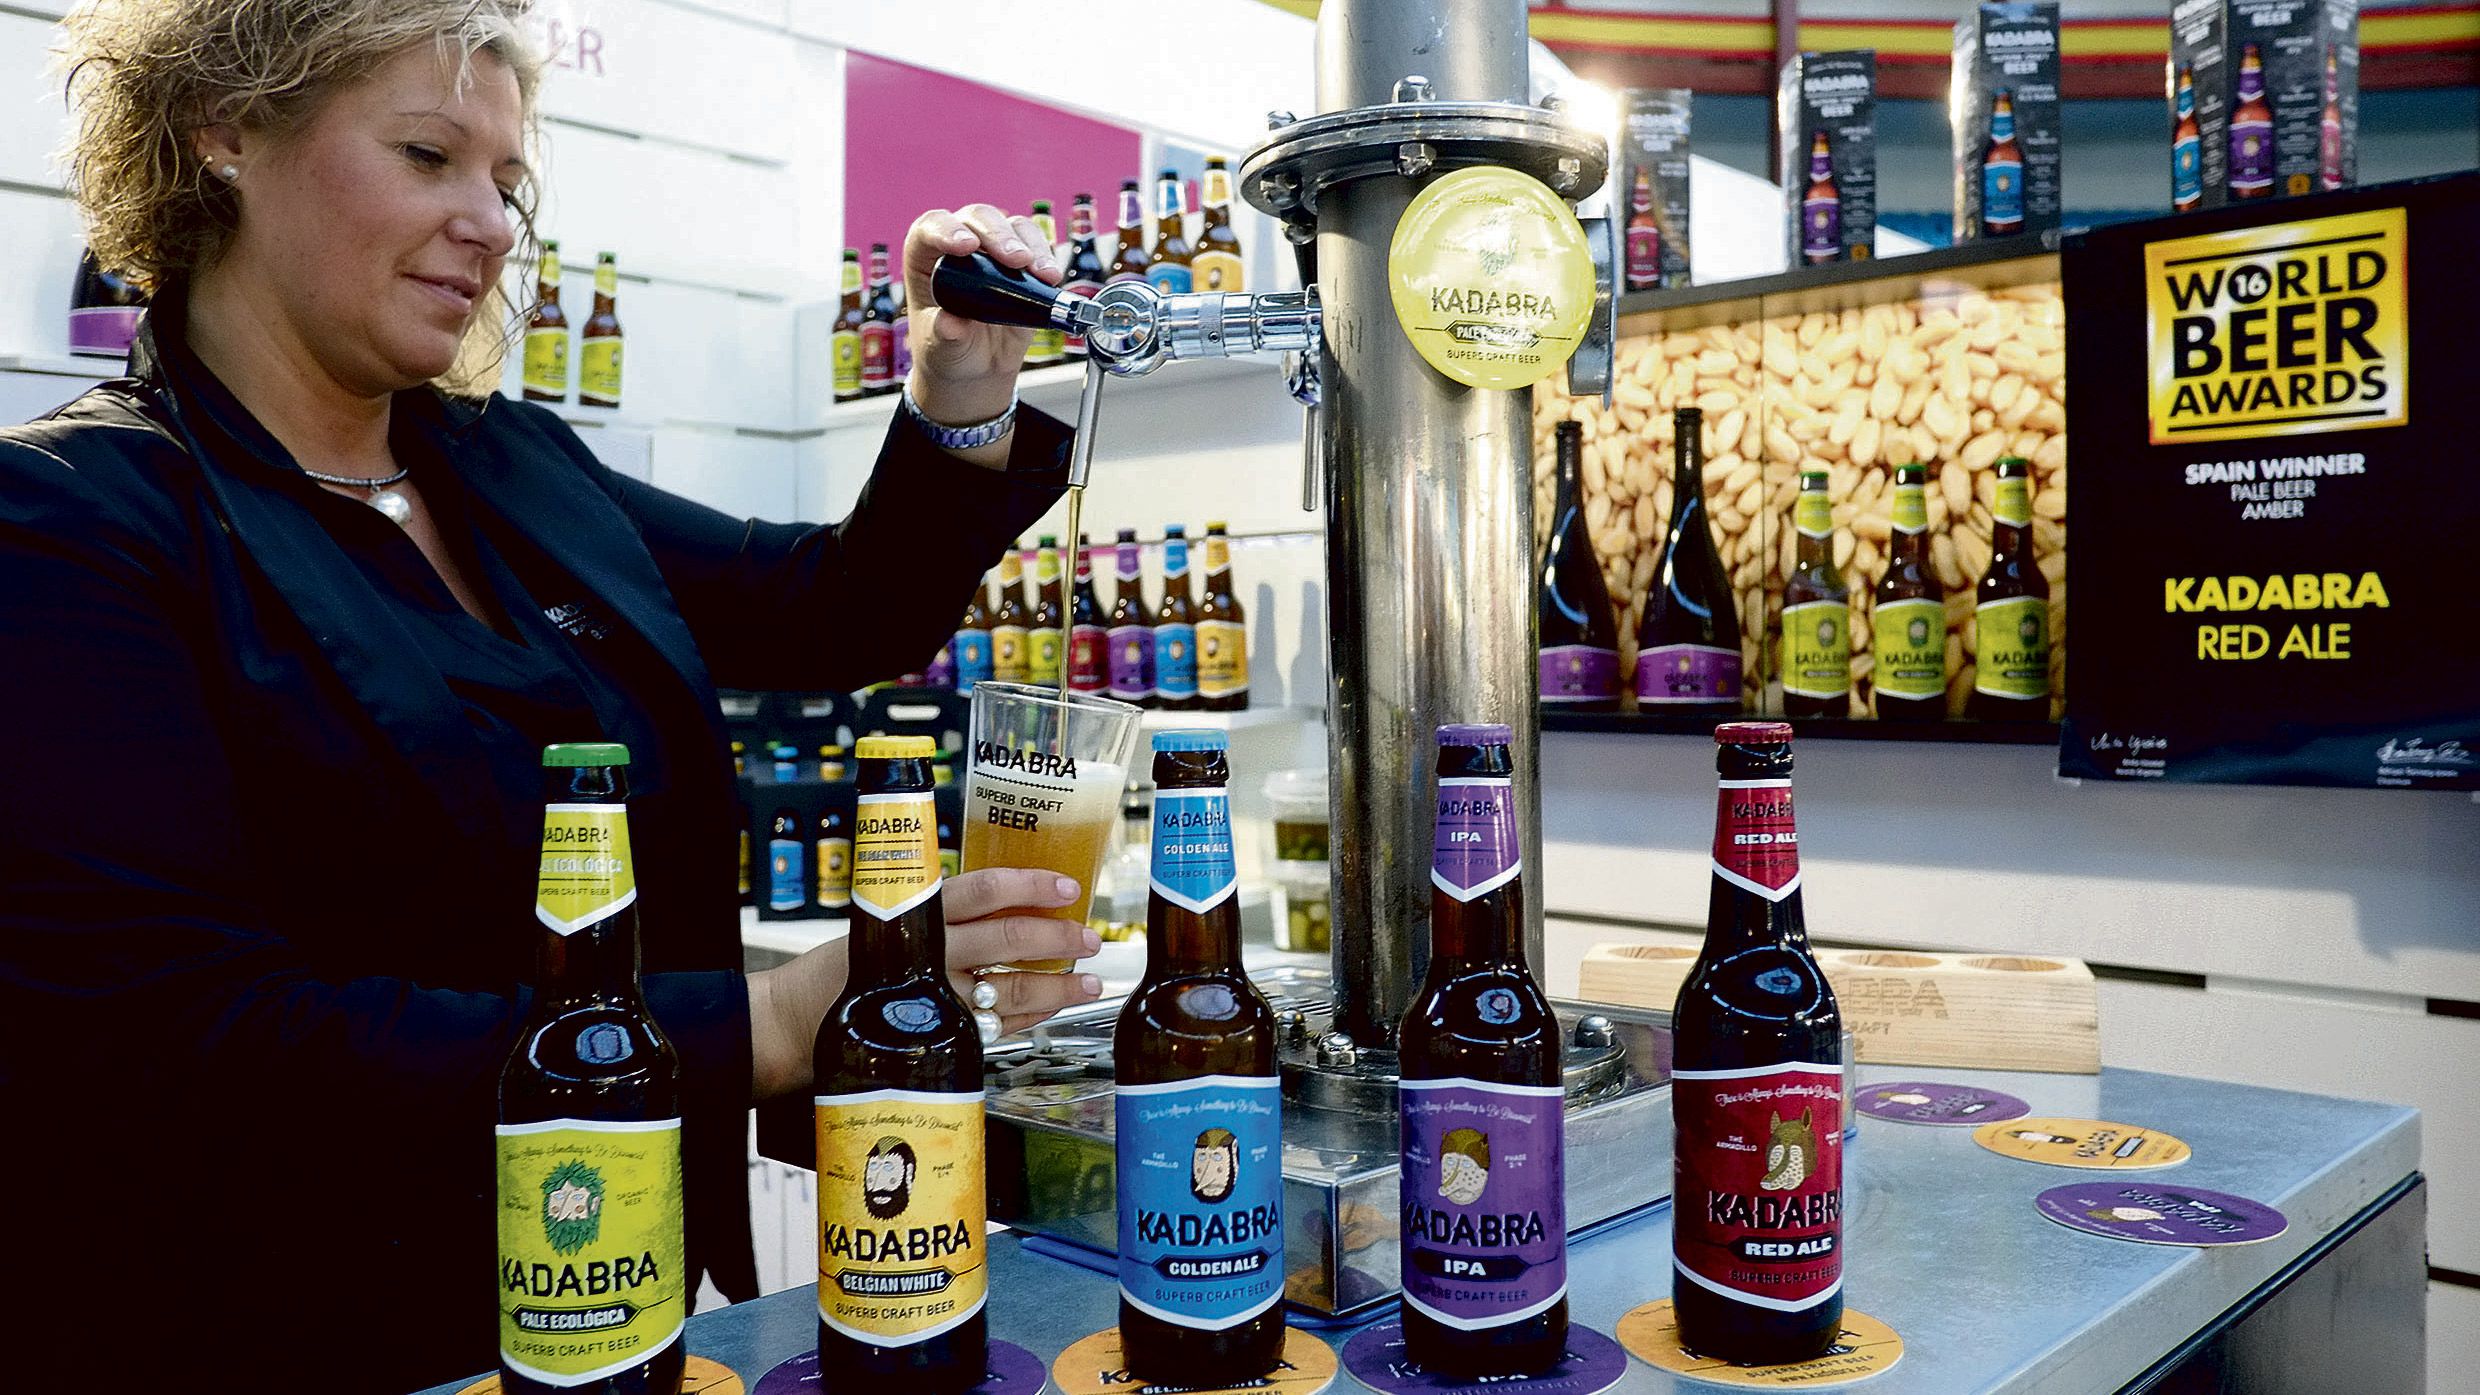 La Feria, que exhibe varias marcas de cervezas, como Kadabra, acogió ayer el taller ‘Saber saborear cervezas’. | DANIEL MARTÍN